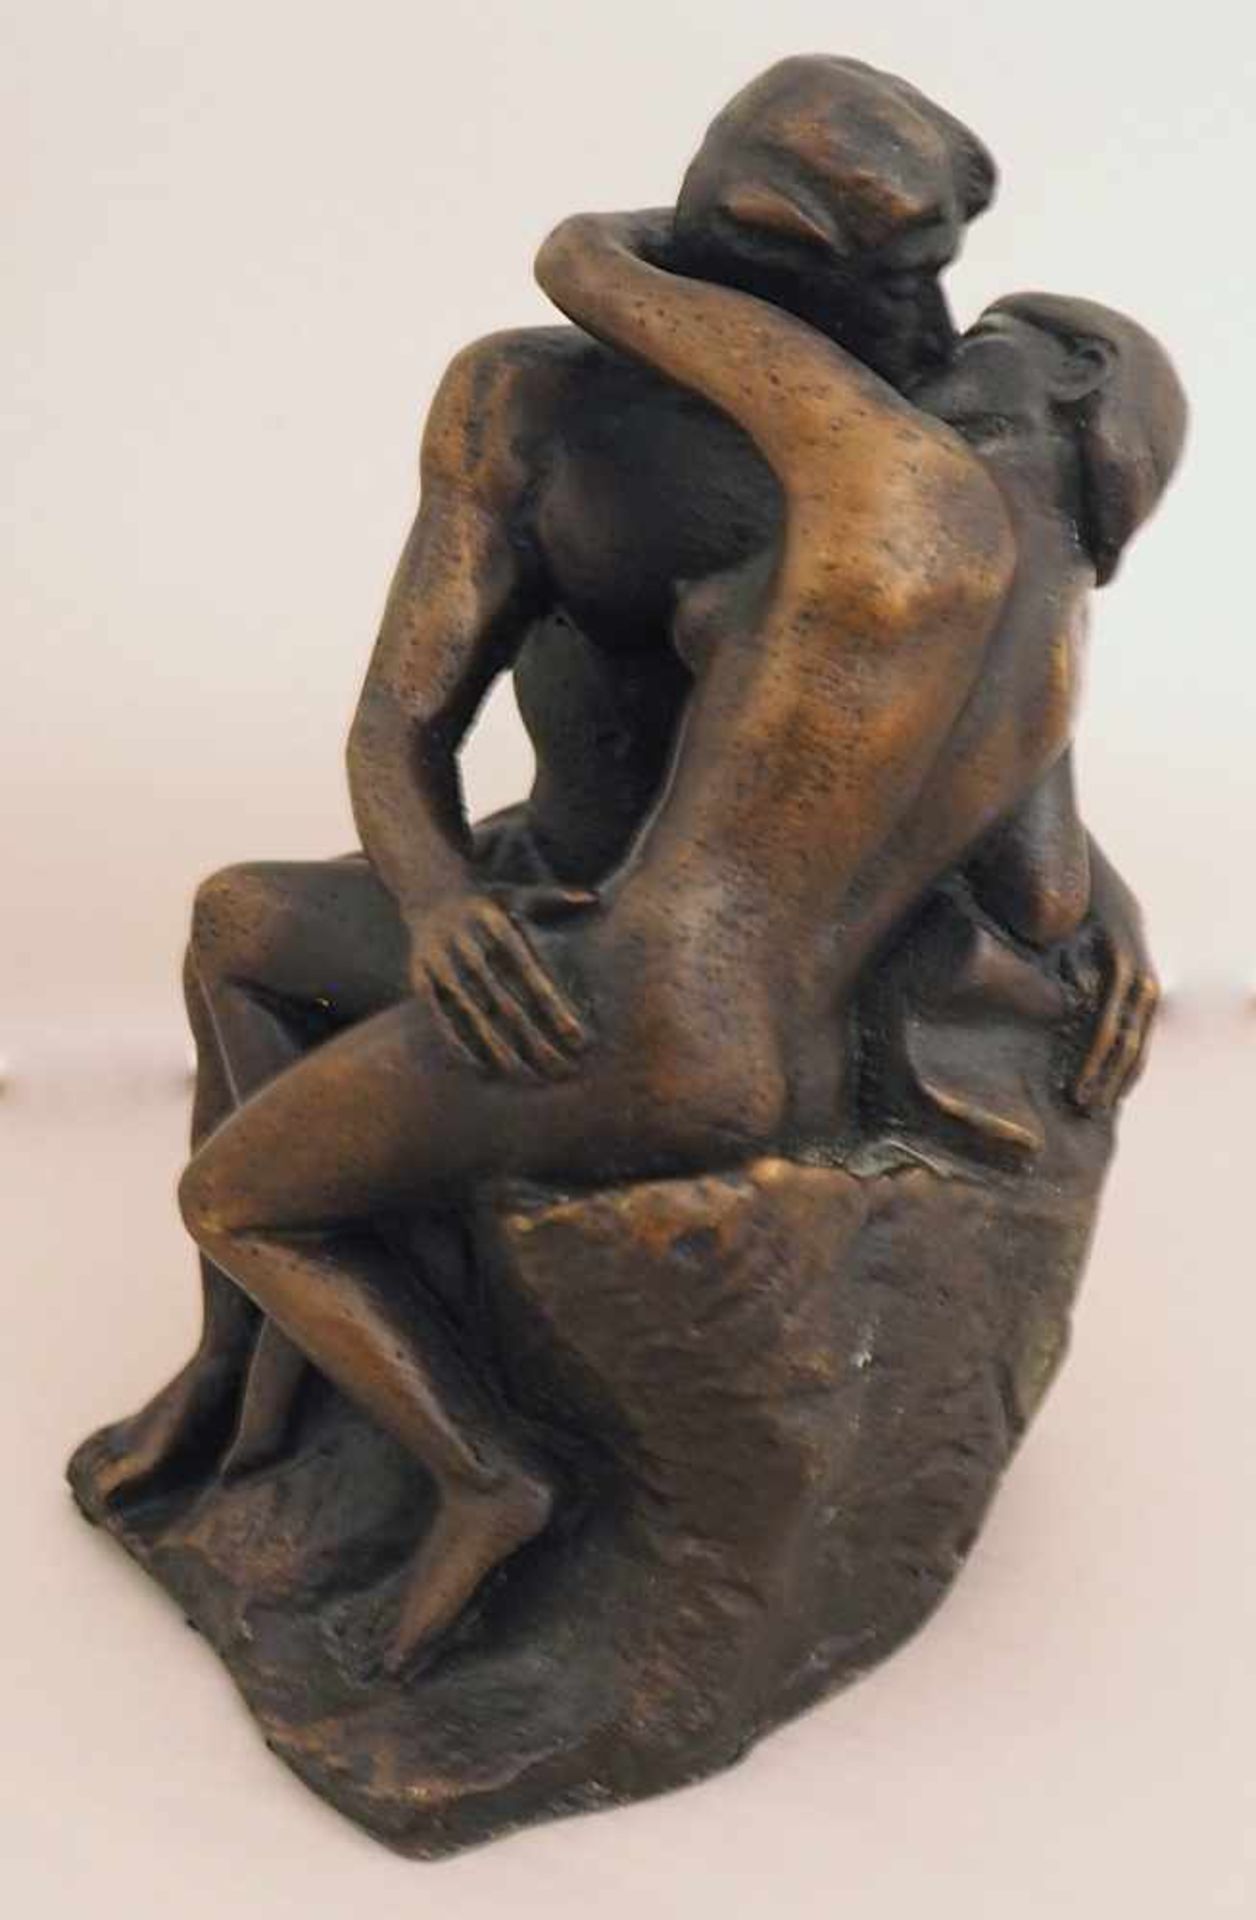 1 Figur, wohl Metall u.a. Kopie/Replik nach Rodin "Der Kuss"Höhe ca. 10cm sowie eine - Bild 2 aus 2